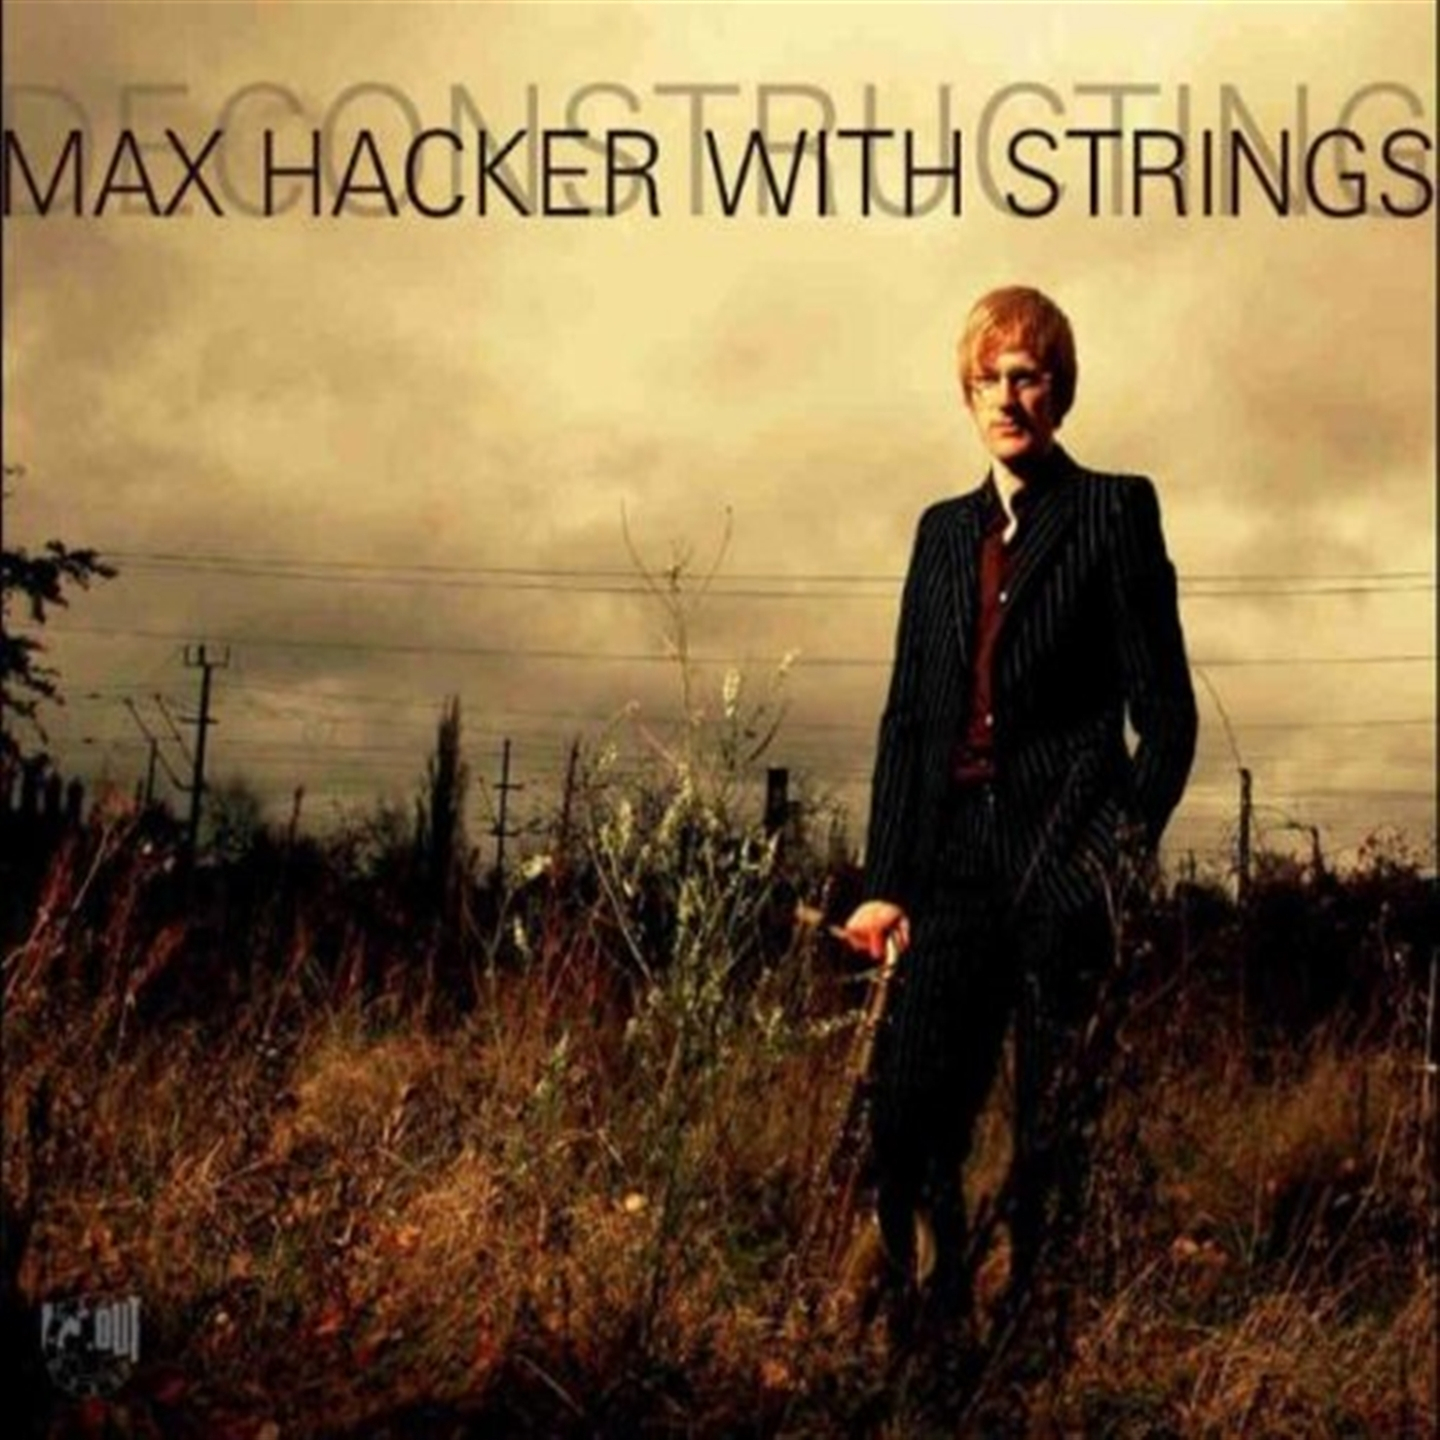 DECONSTRUCTING MAX HACKER